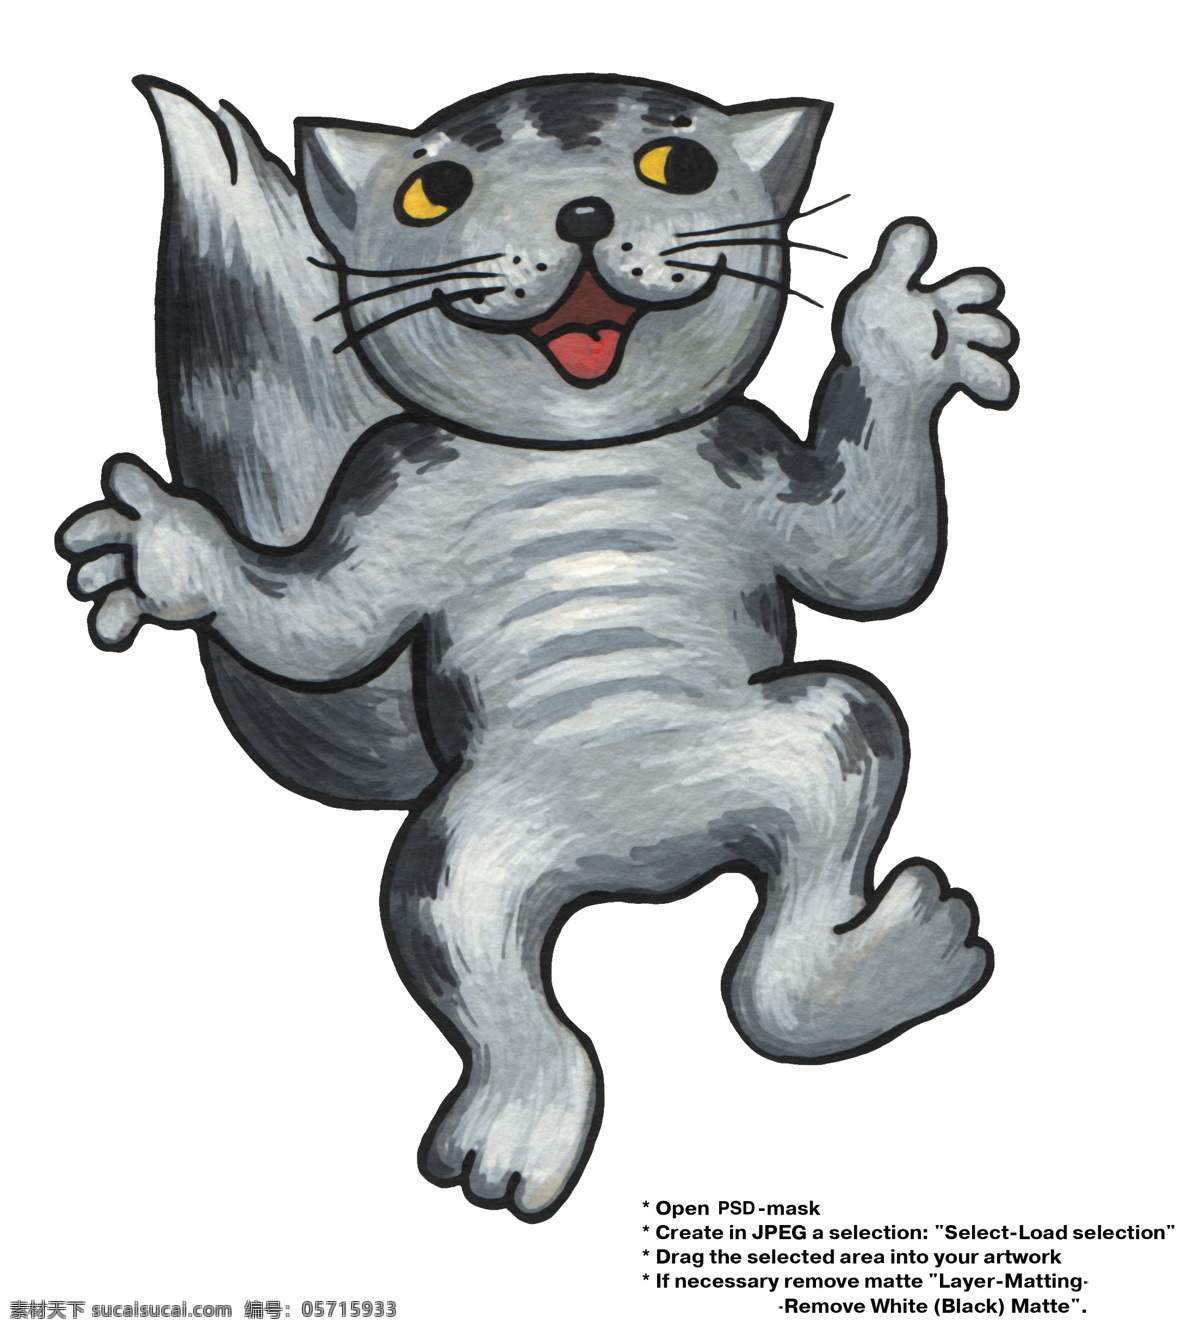 卡通 小 灰 猫 卡通素材 可爱图片 卡通小灰猫 造型 动漫 可爱